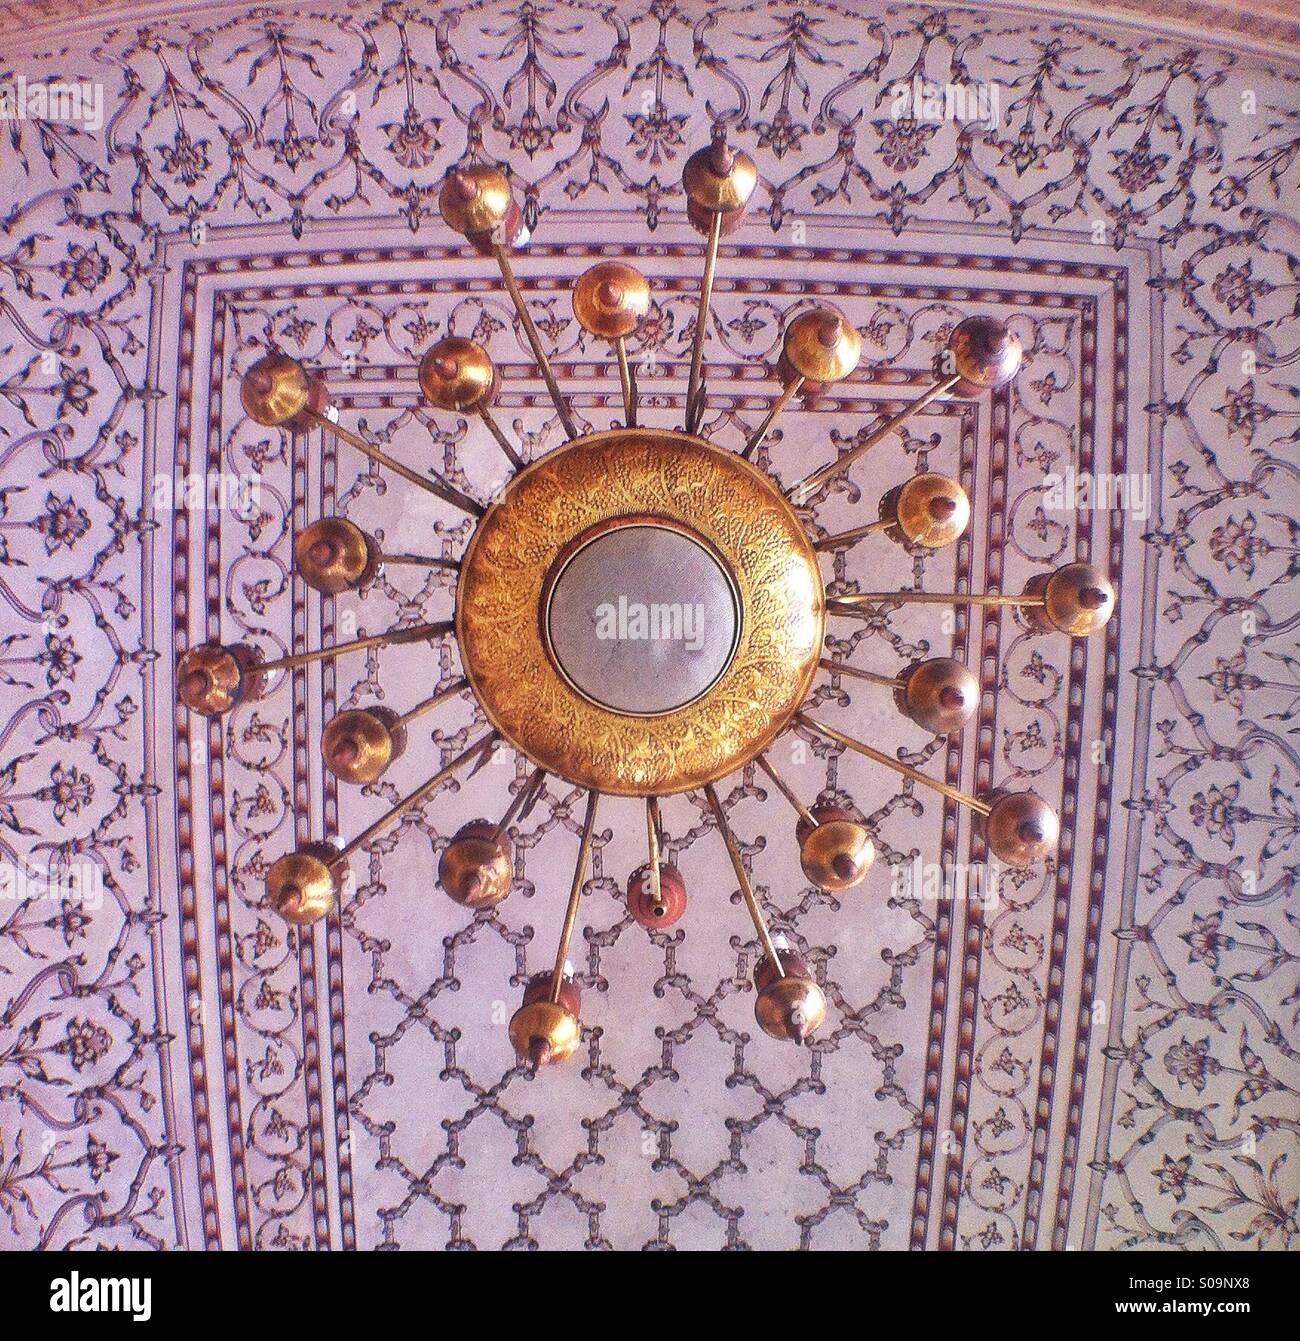 Un vecchio lampadario dorato appeso sulla sommità di una ornata architettura islamica. Foto Stock